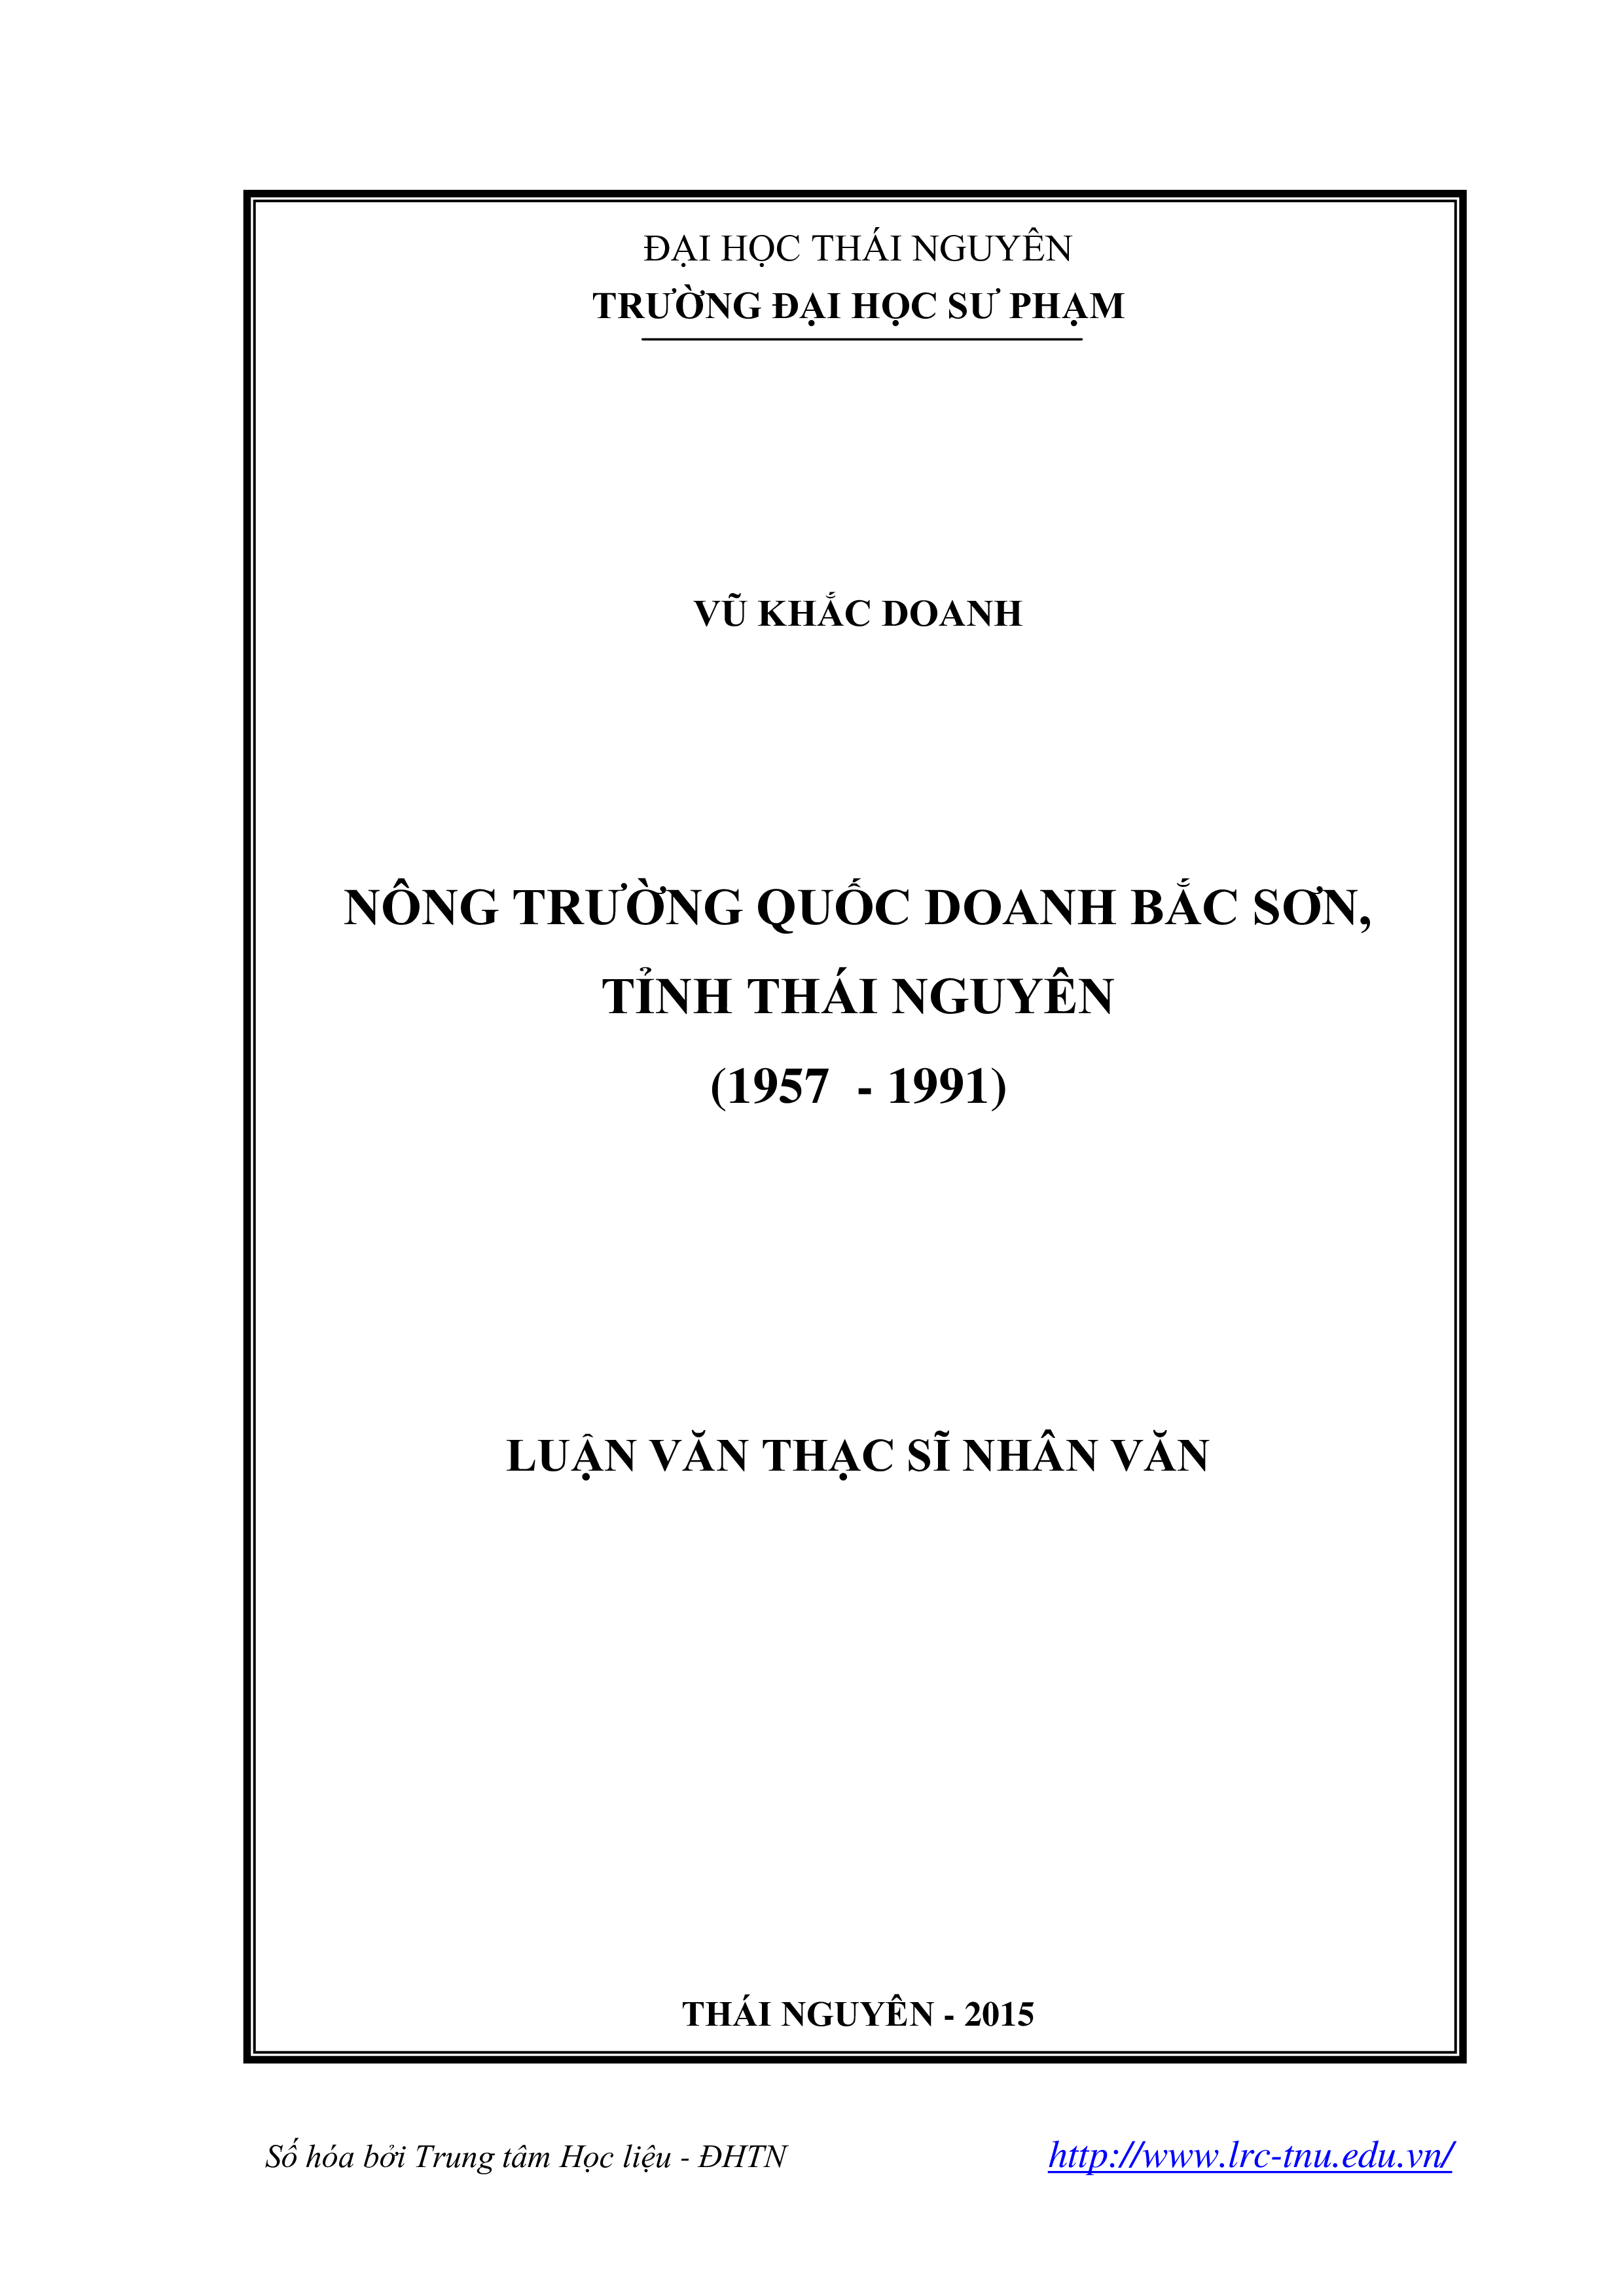 Nông trường quốc doanh Bắc Sơn, tỉnh Thái Nguyên (1957-1991)